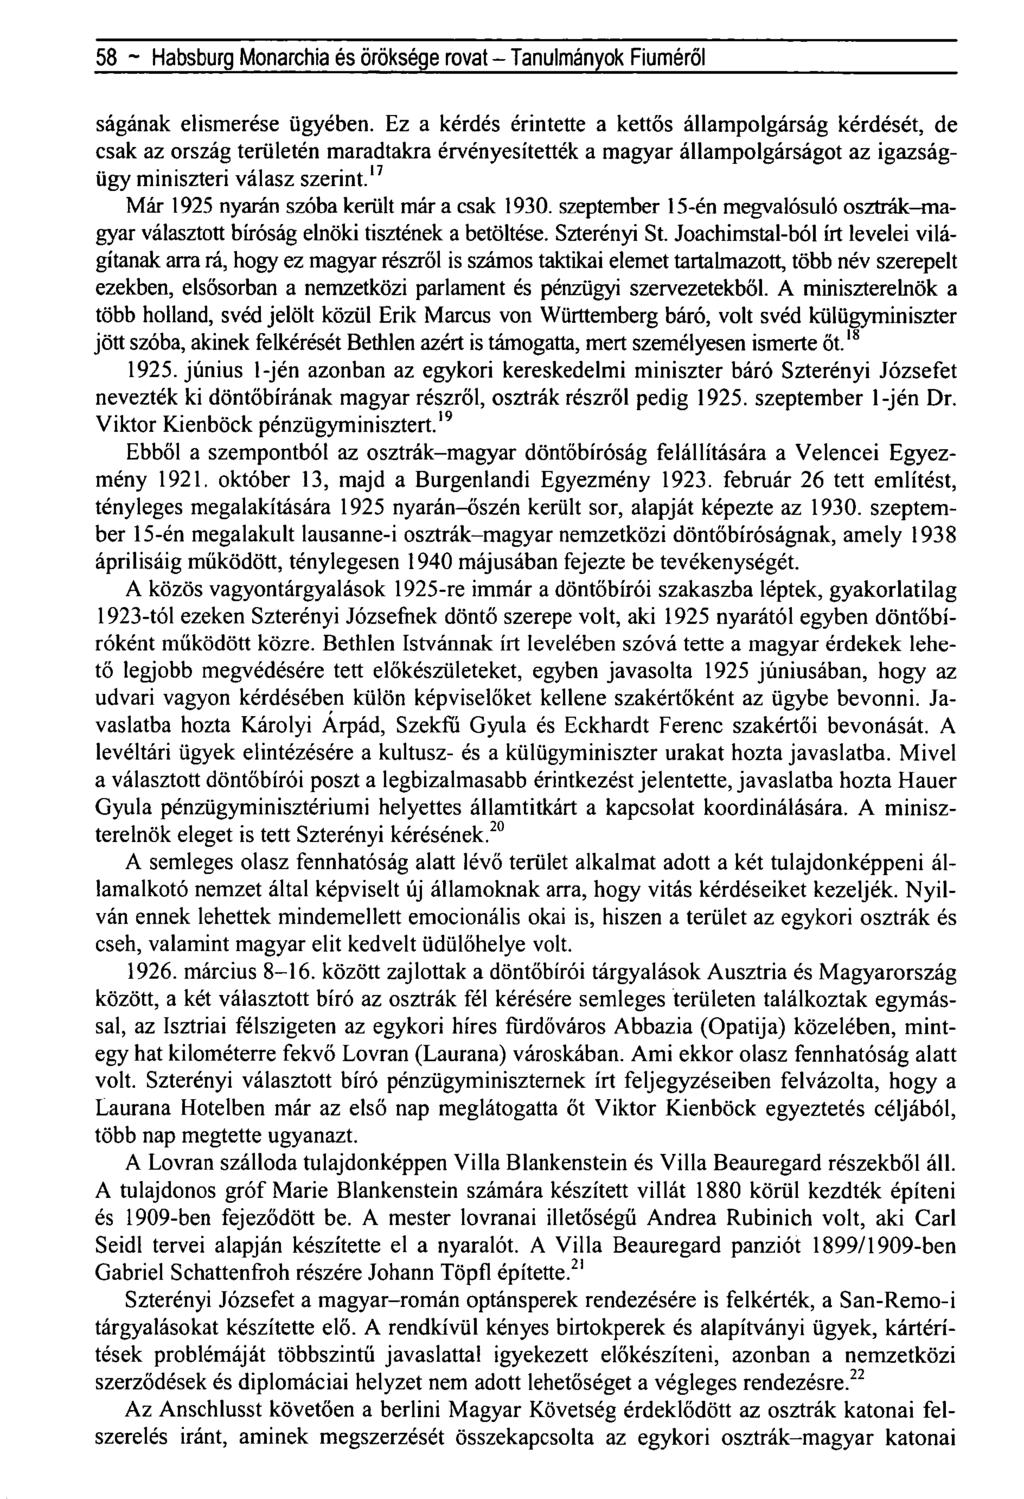 58 ~ Habsburg Monarchia és öröksége rovat - Tanulmányok Fiúméról ságának elismerése ügyében.